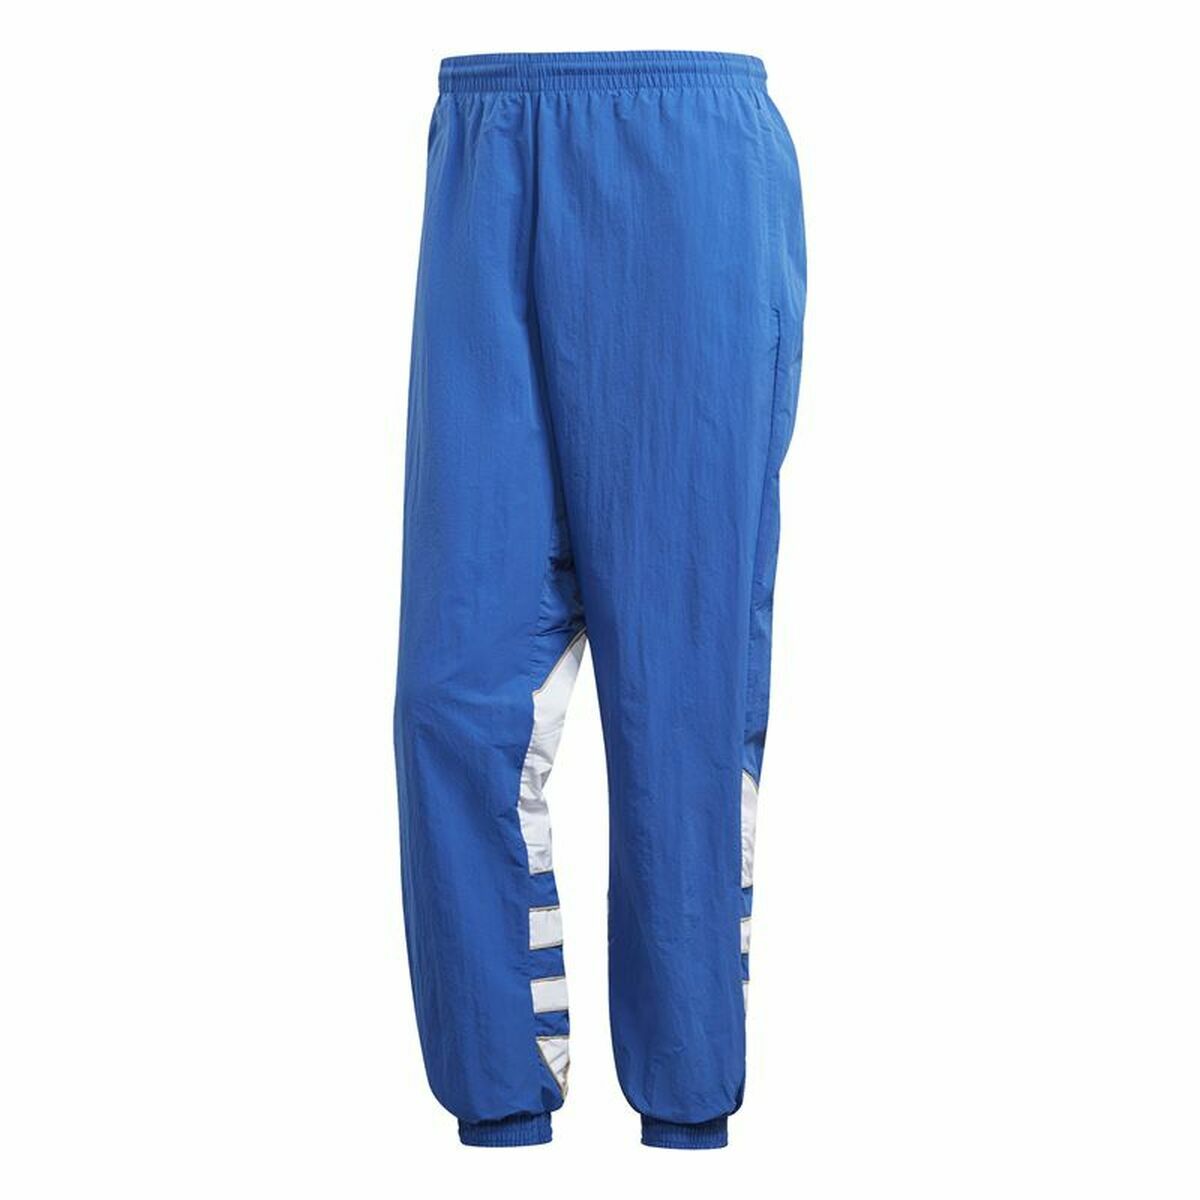 Pantalone di Tuta per Adulti Adidas Trefoil Azzurro Uomo